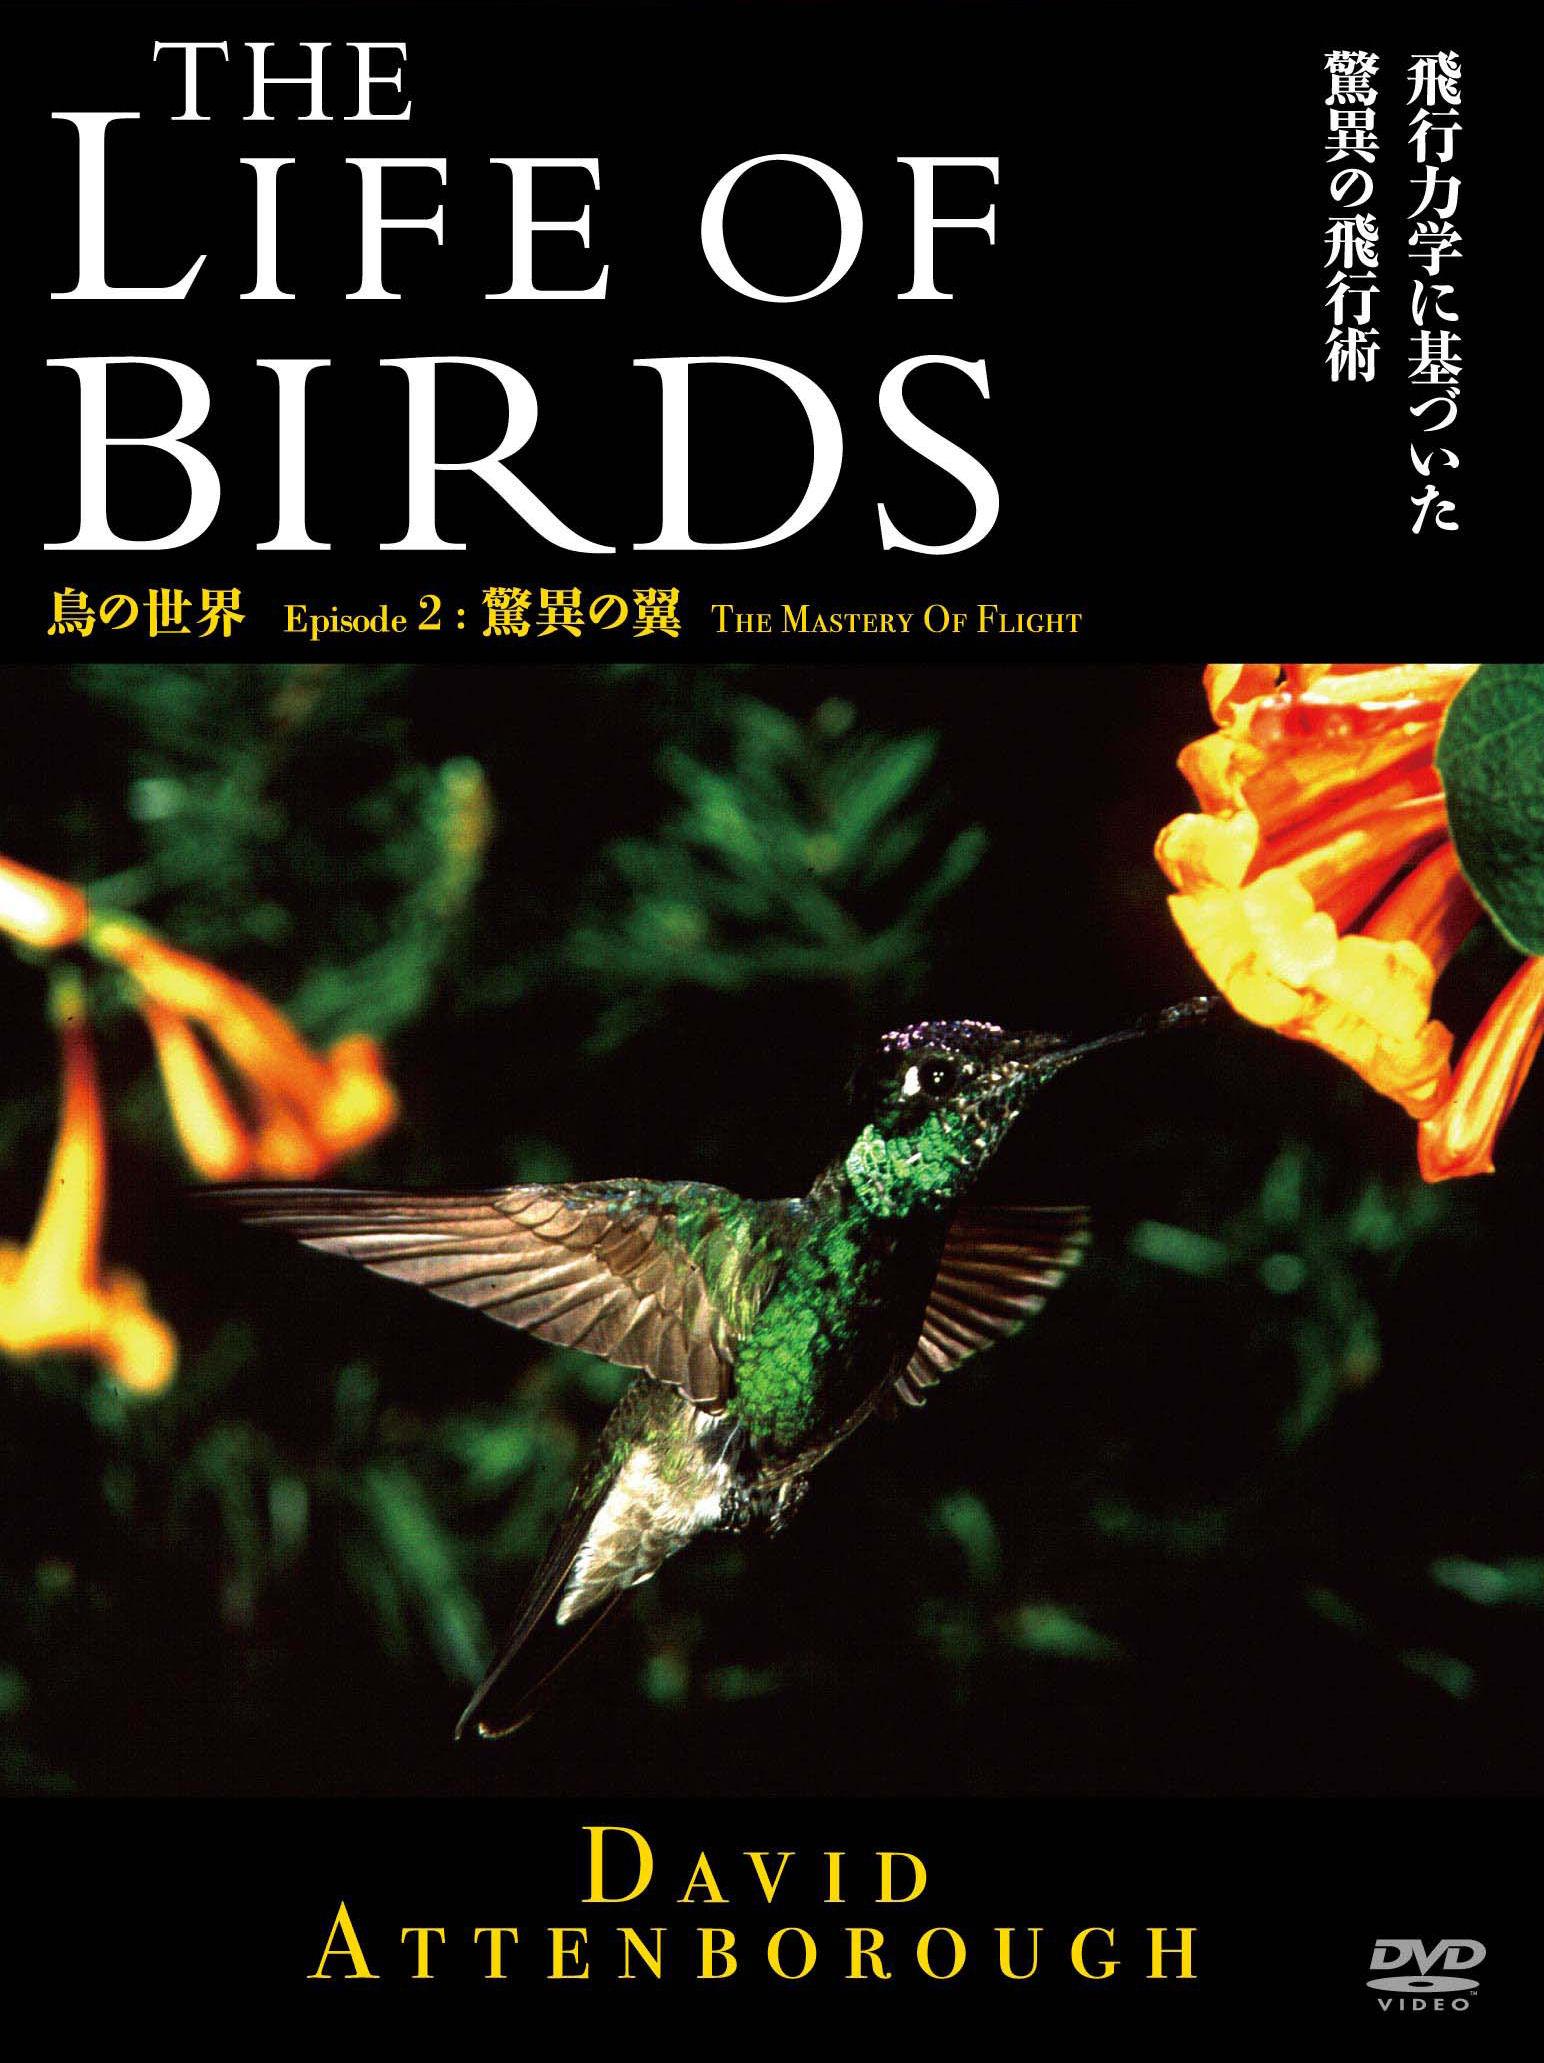 THE LIFE OF BIRDS 鳥の世界 驚異の翼 のサムネイル画像